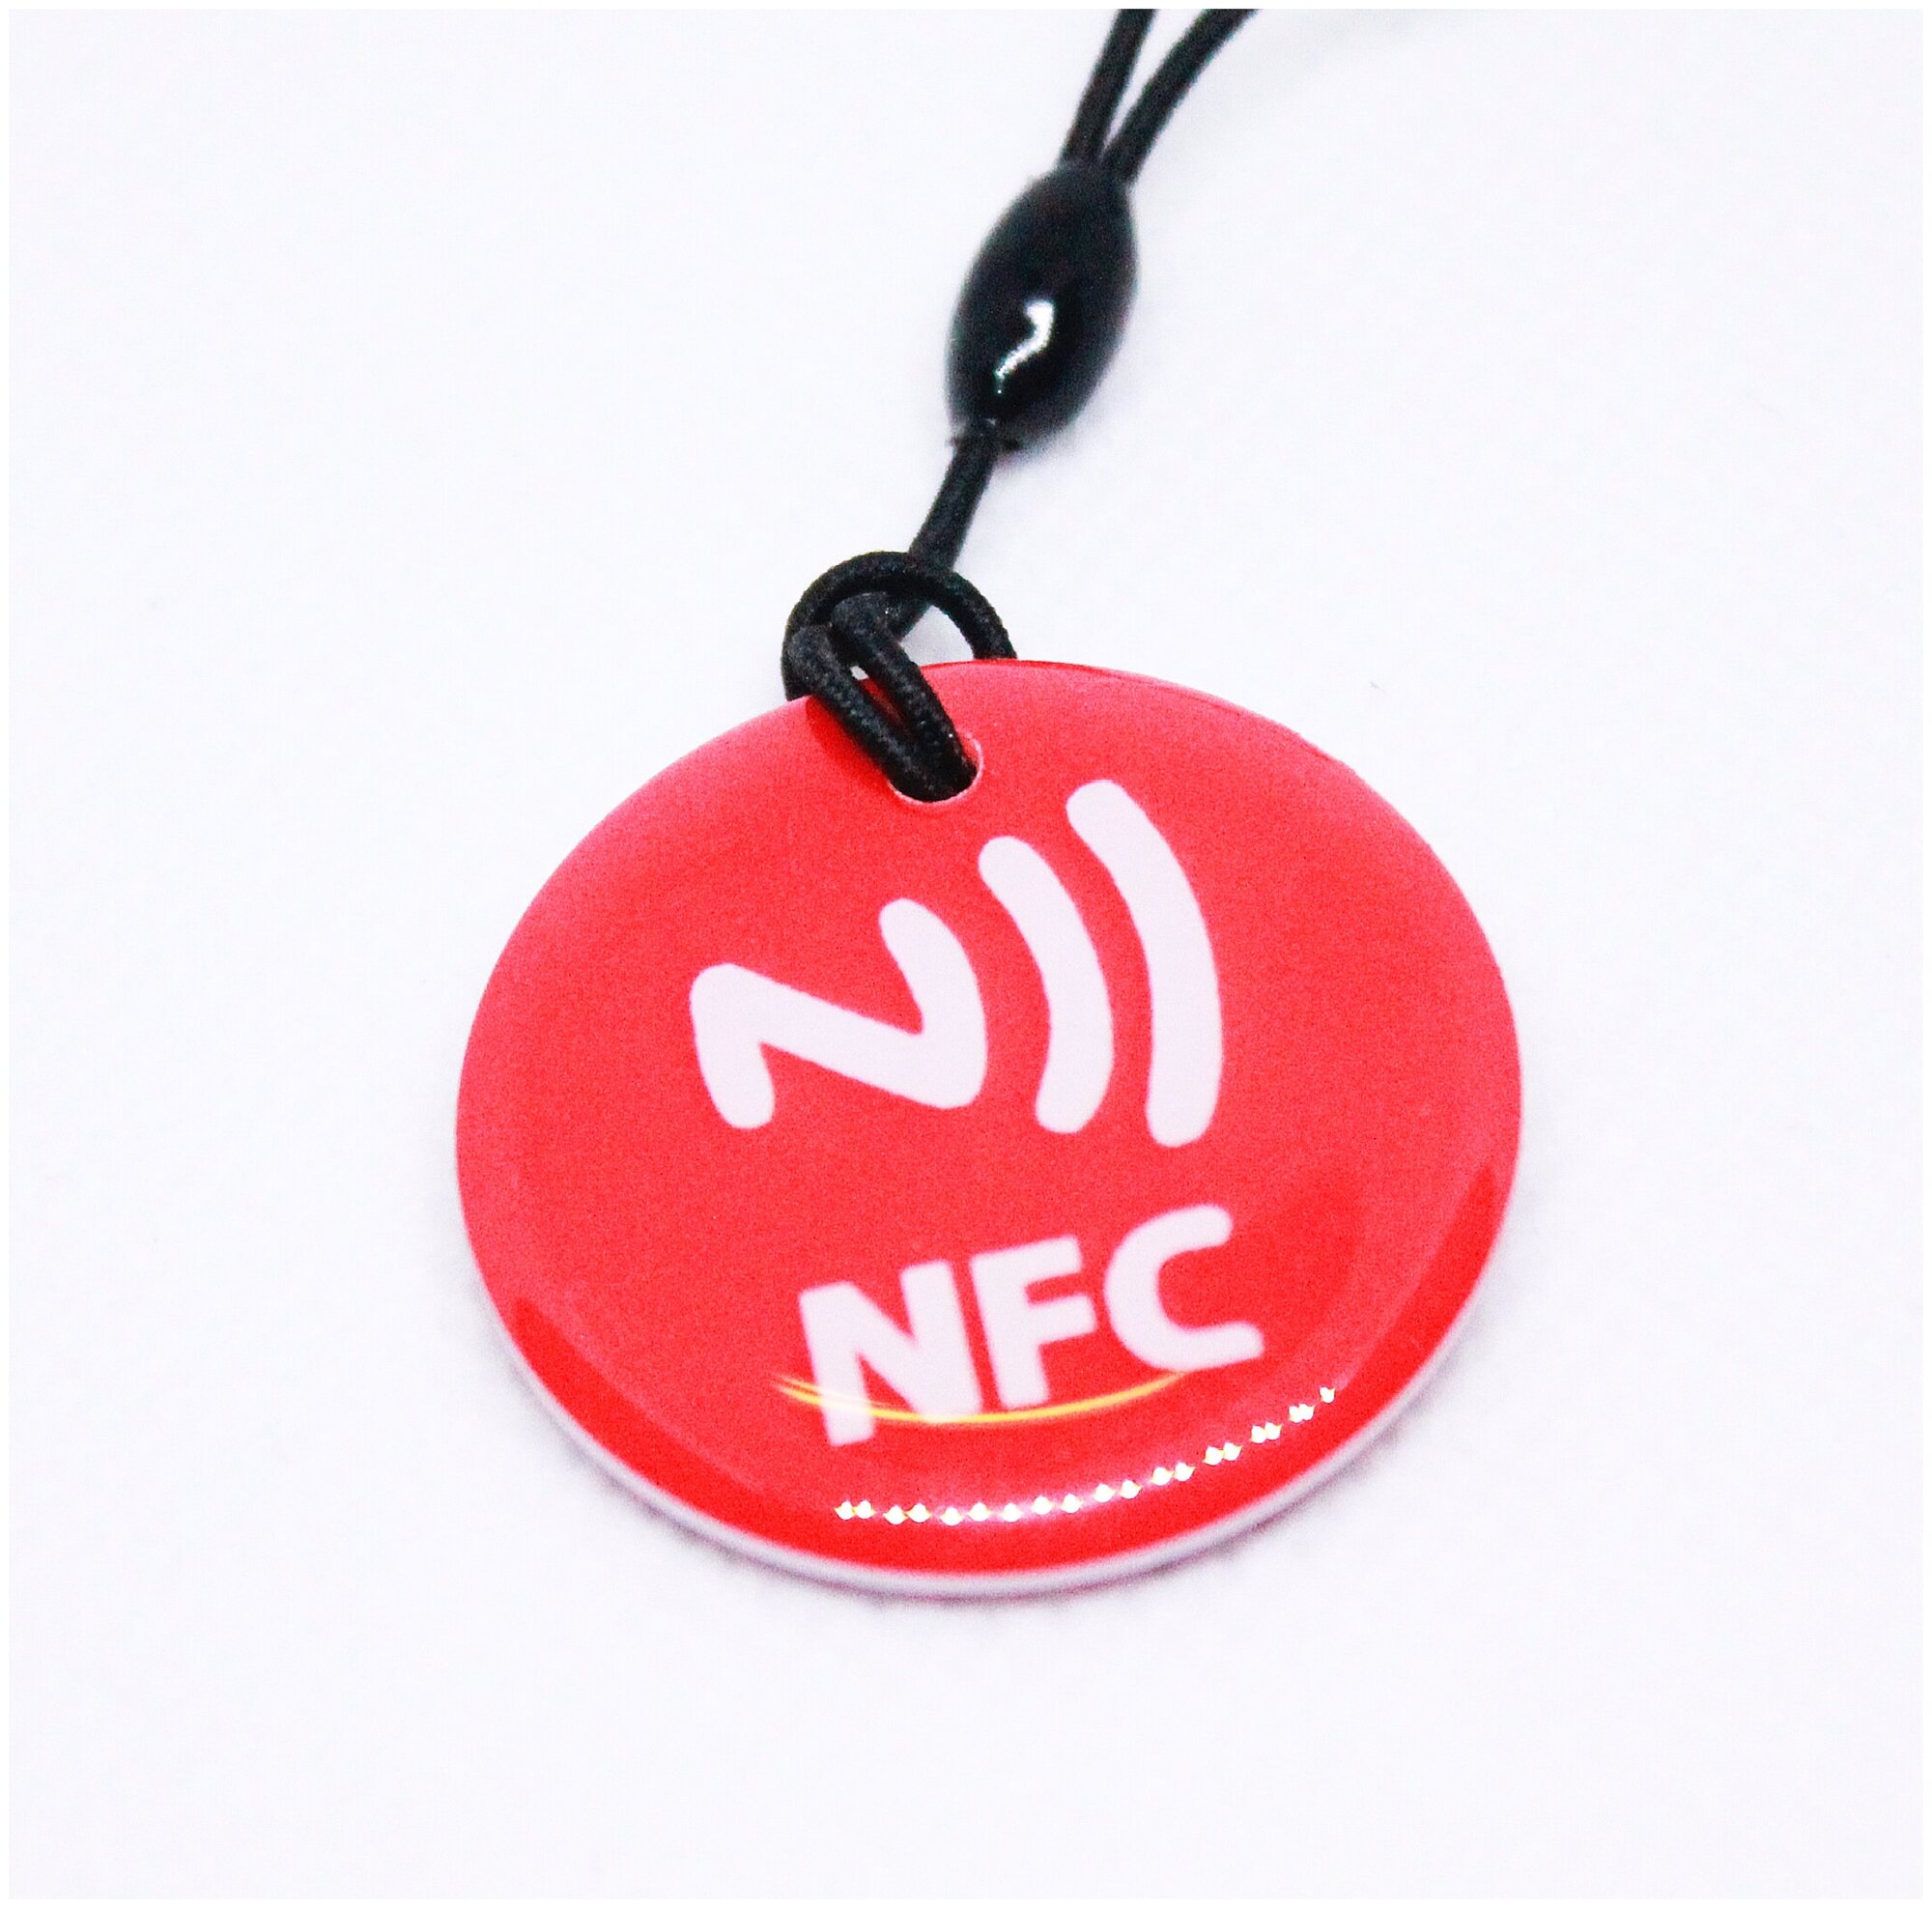 Метка NFC NTAG213 эпоксидная. Для автоматизации, умный дом, электронная визитка НФС. Цвет красный